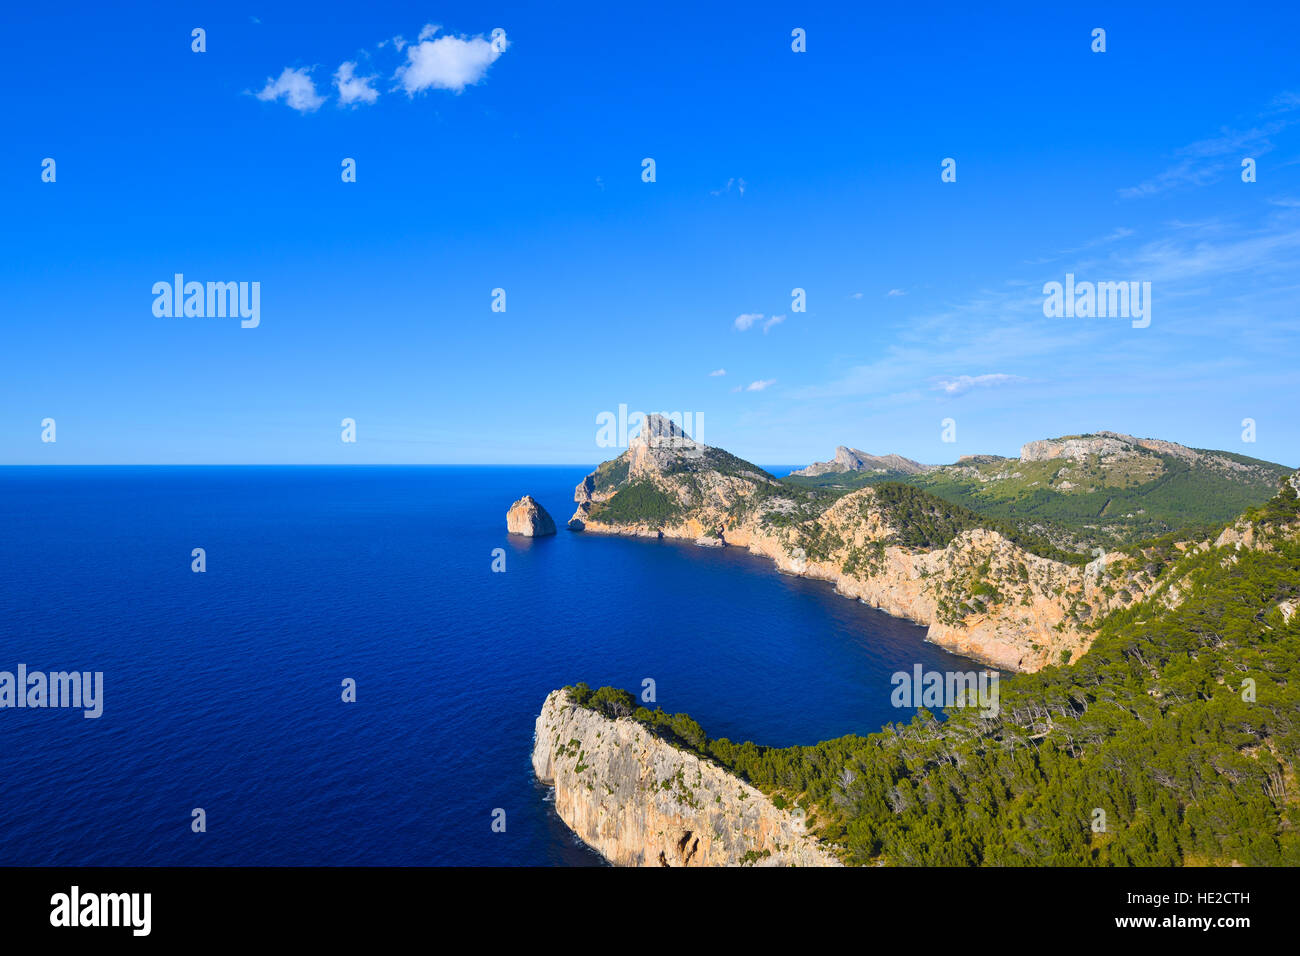 Le Cap Formentor peninsula et vue mer bleue profonde sur l'île de Majorque en Espagne Banque D'Images